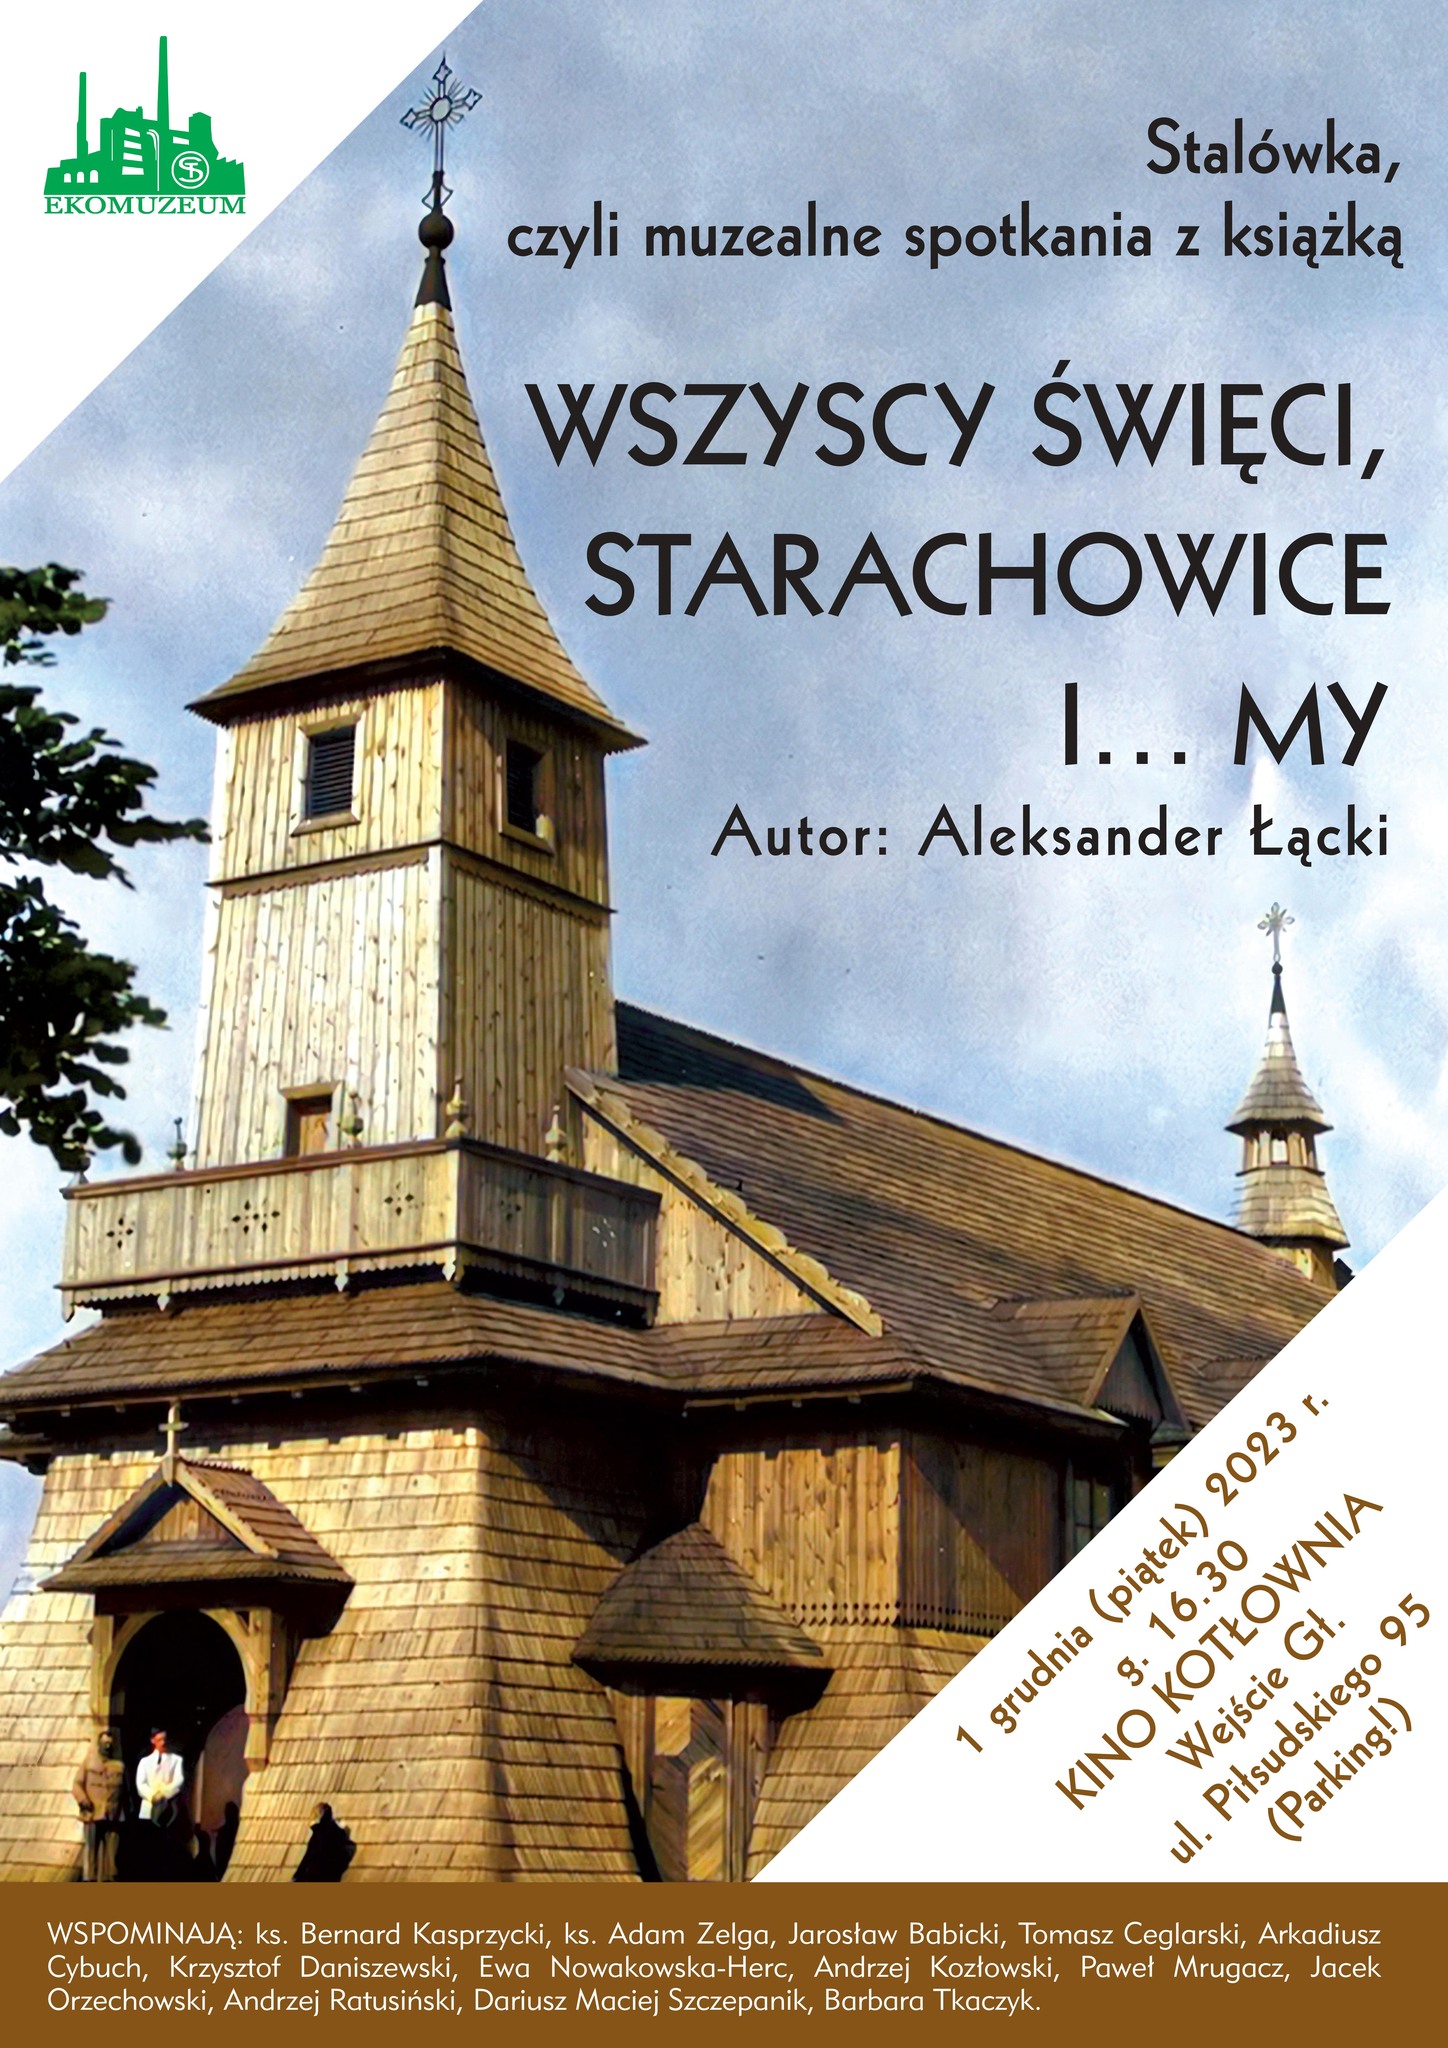 ” Wszyscy Święci, Starachowice i …My”.